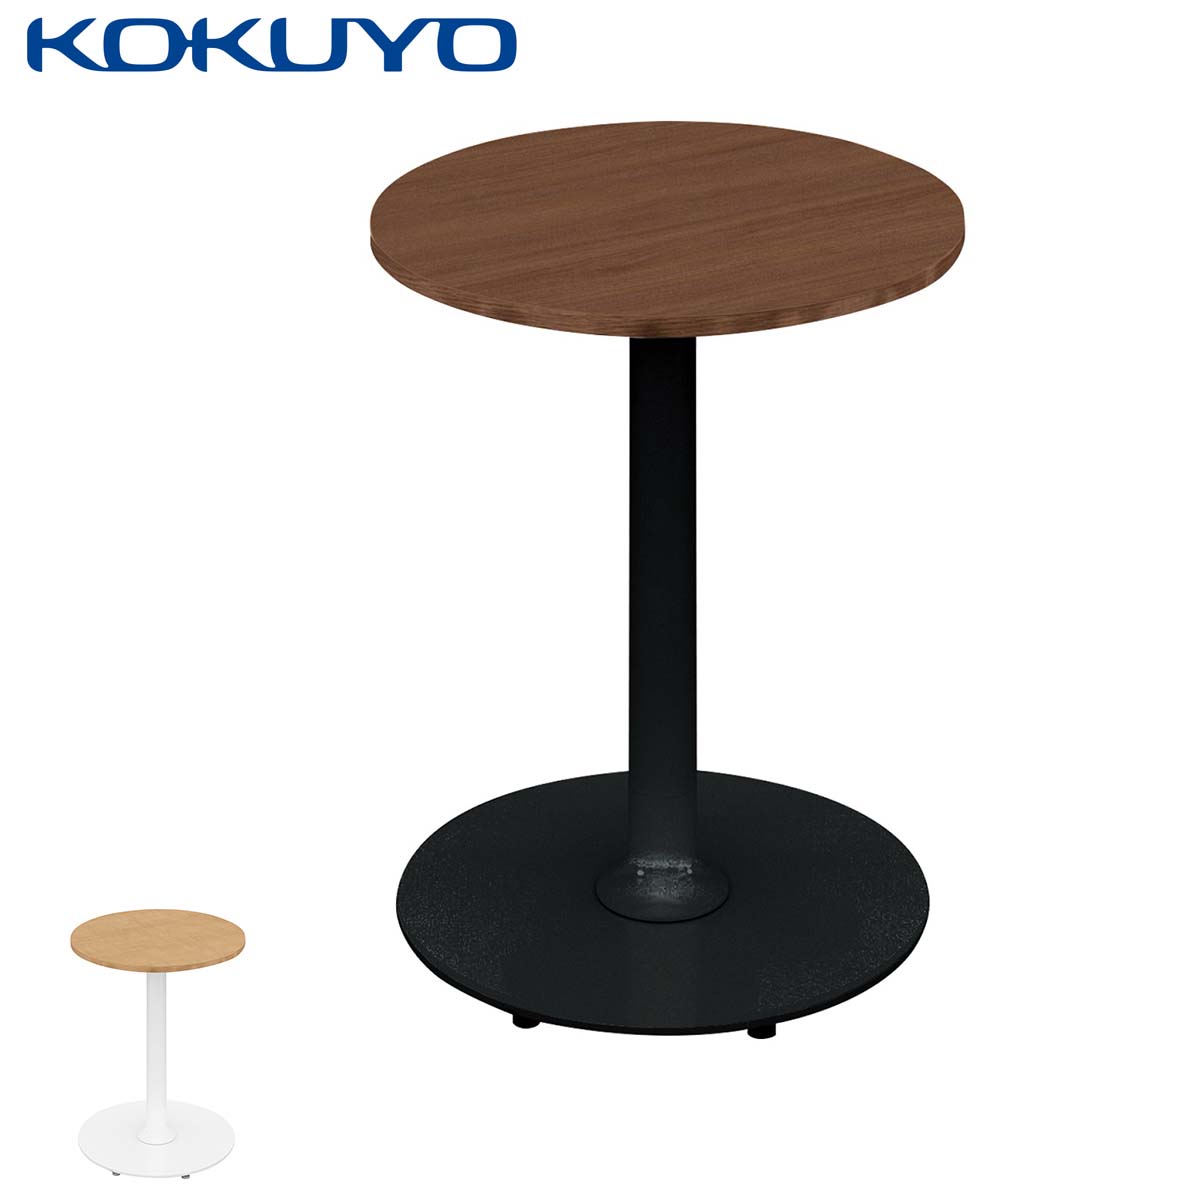 コクヨ ミーティングテーブル テーブル Franka フランカ TFK-SC0404KM 単柱脚テーブル スチール脚 円形 スタンダード天板 W45×D45×H62cm